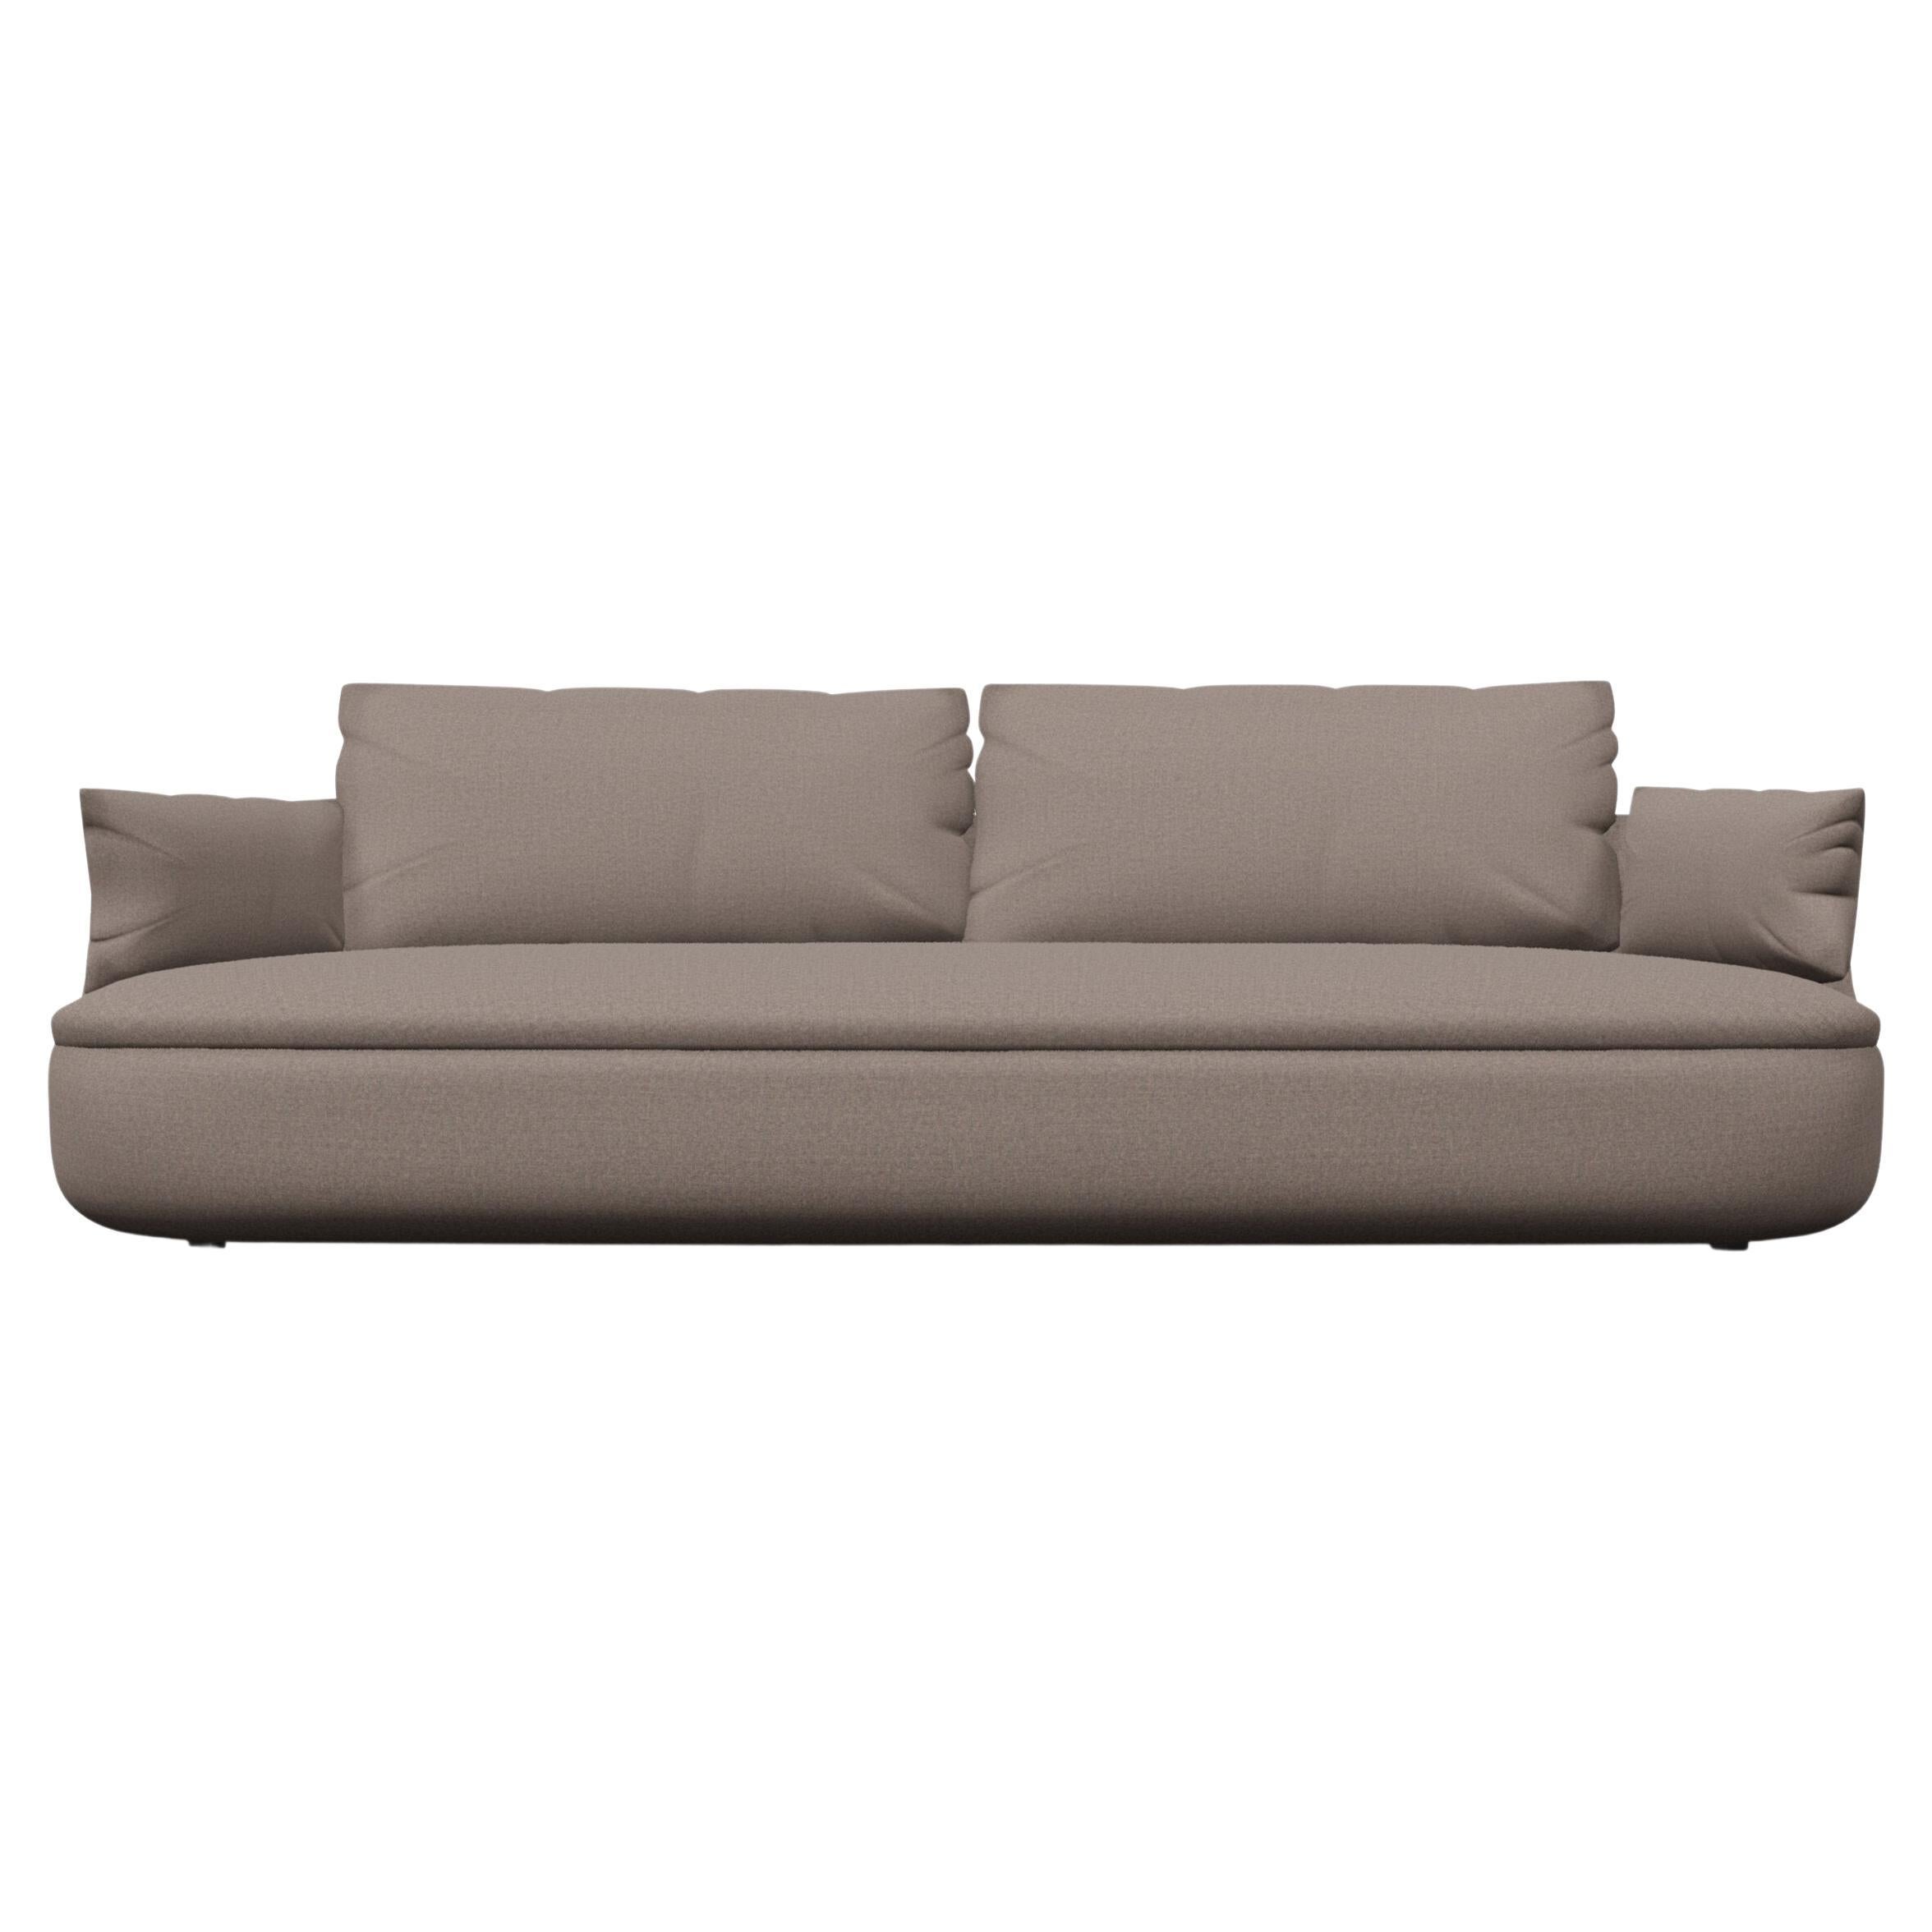 Moooi Bart Basic Sofa in Justo, Sten Beige Upholstery